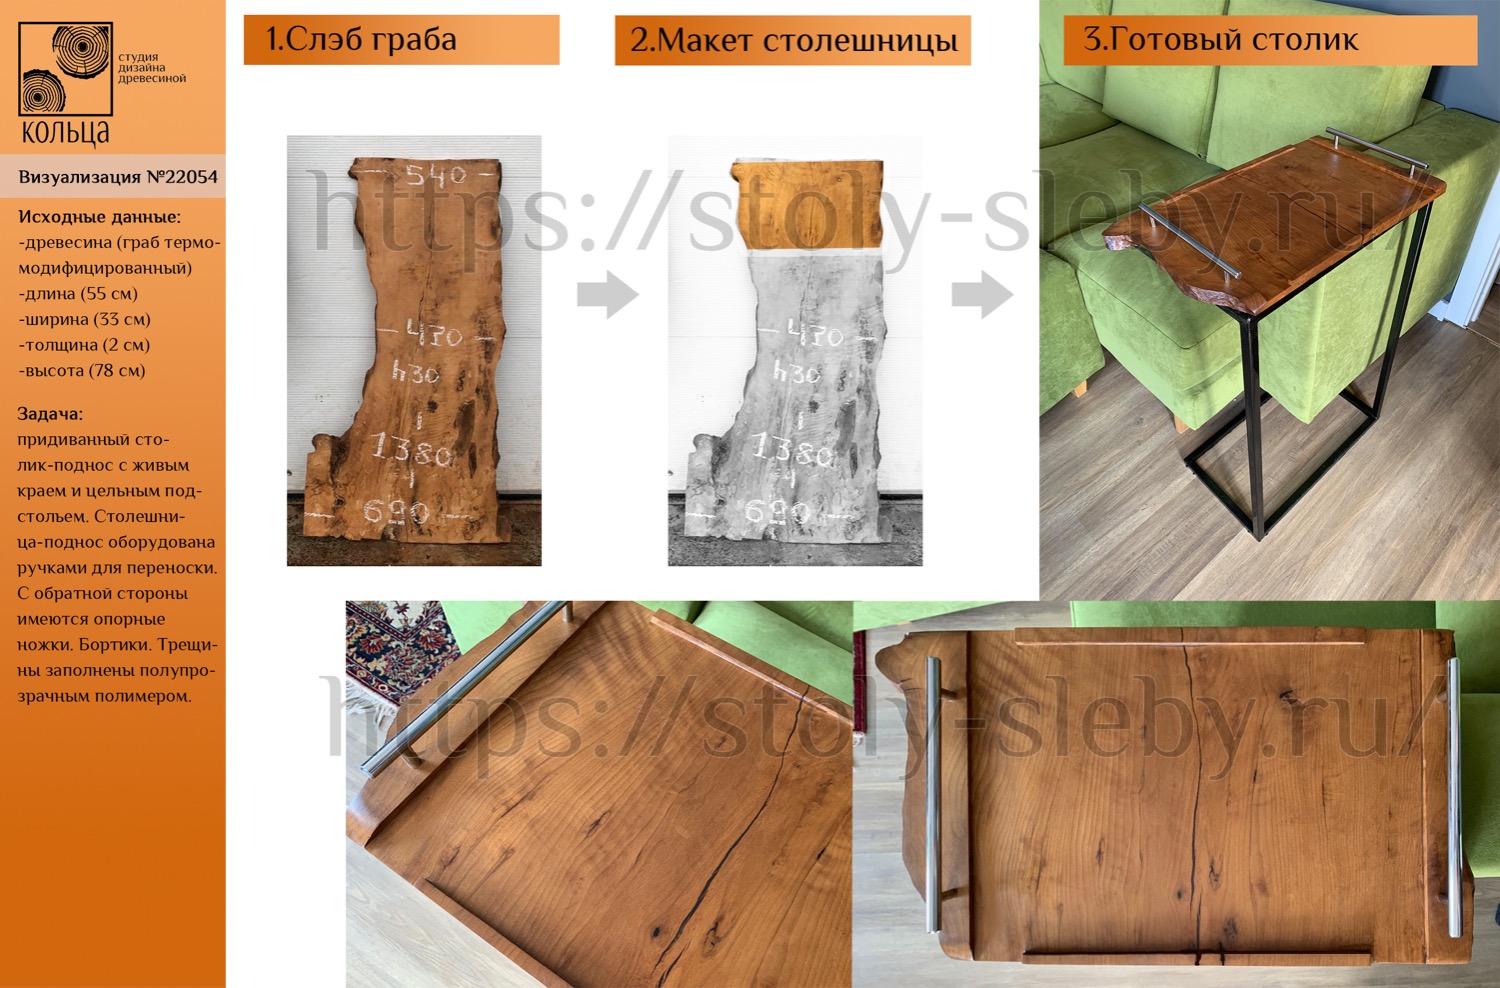 Инфографика: этапы разработки придиванного столика-подноса из слэба термо граба - от студии Кольца